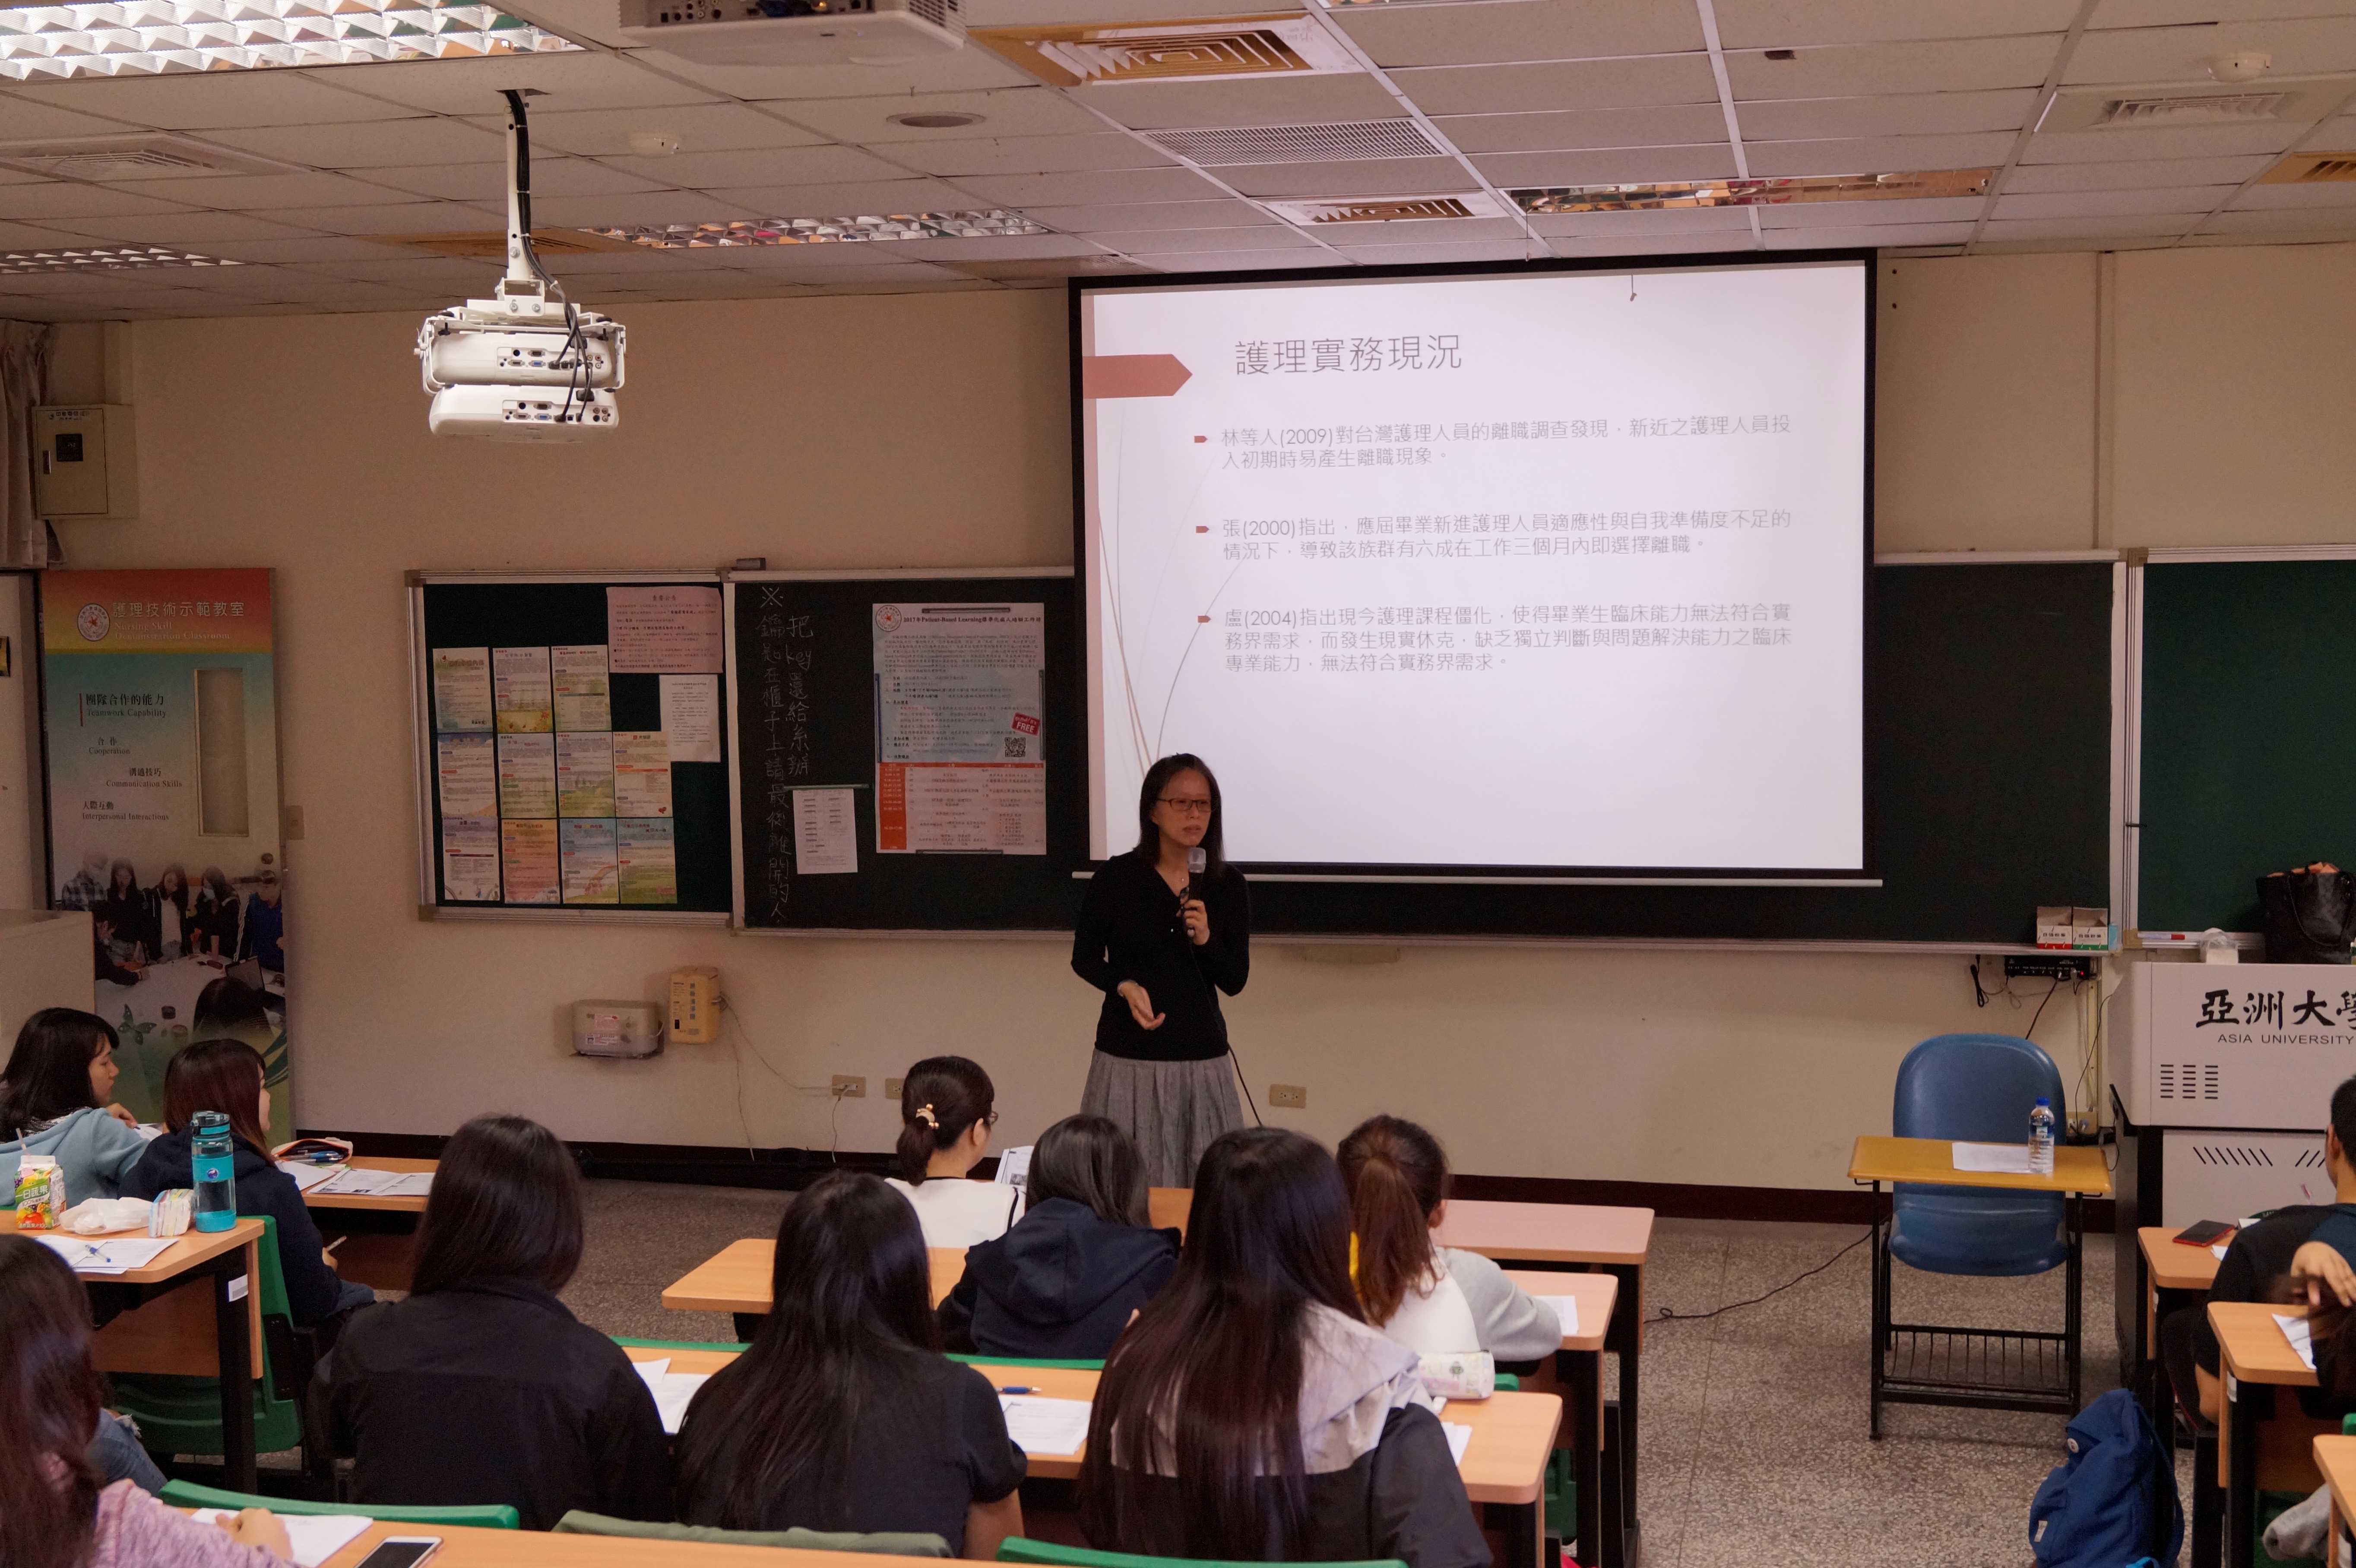 中國醫藥大學護理學系李國禎副教授演講「OSCE概念與教案設計」。